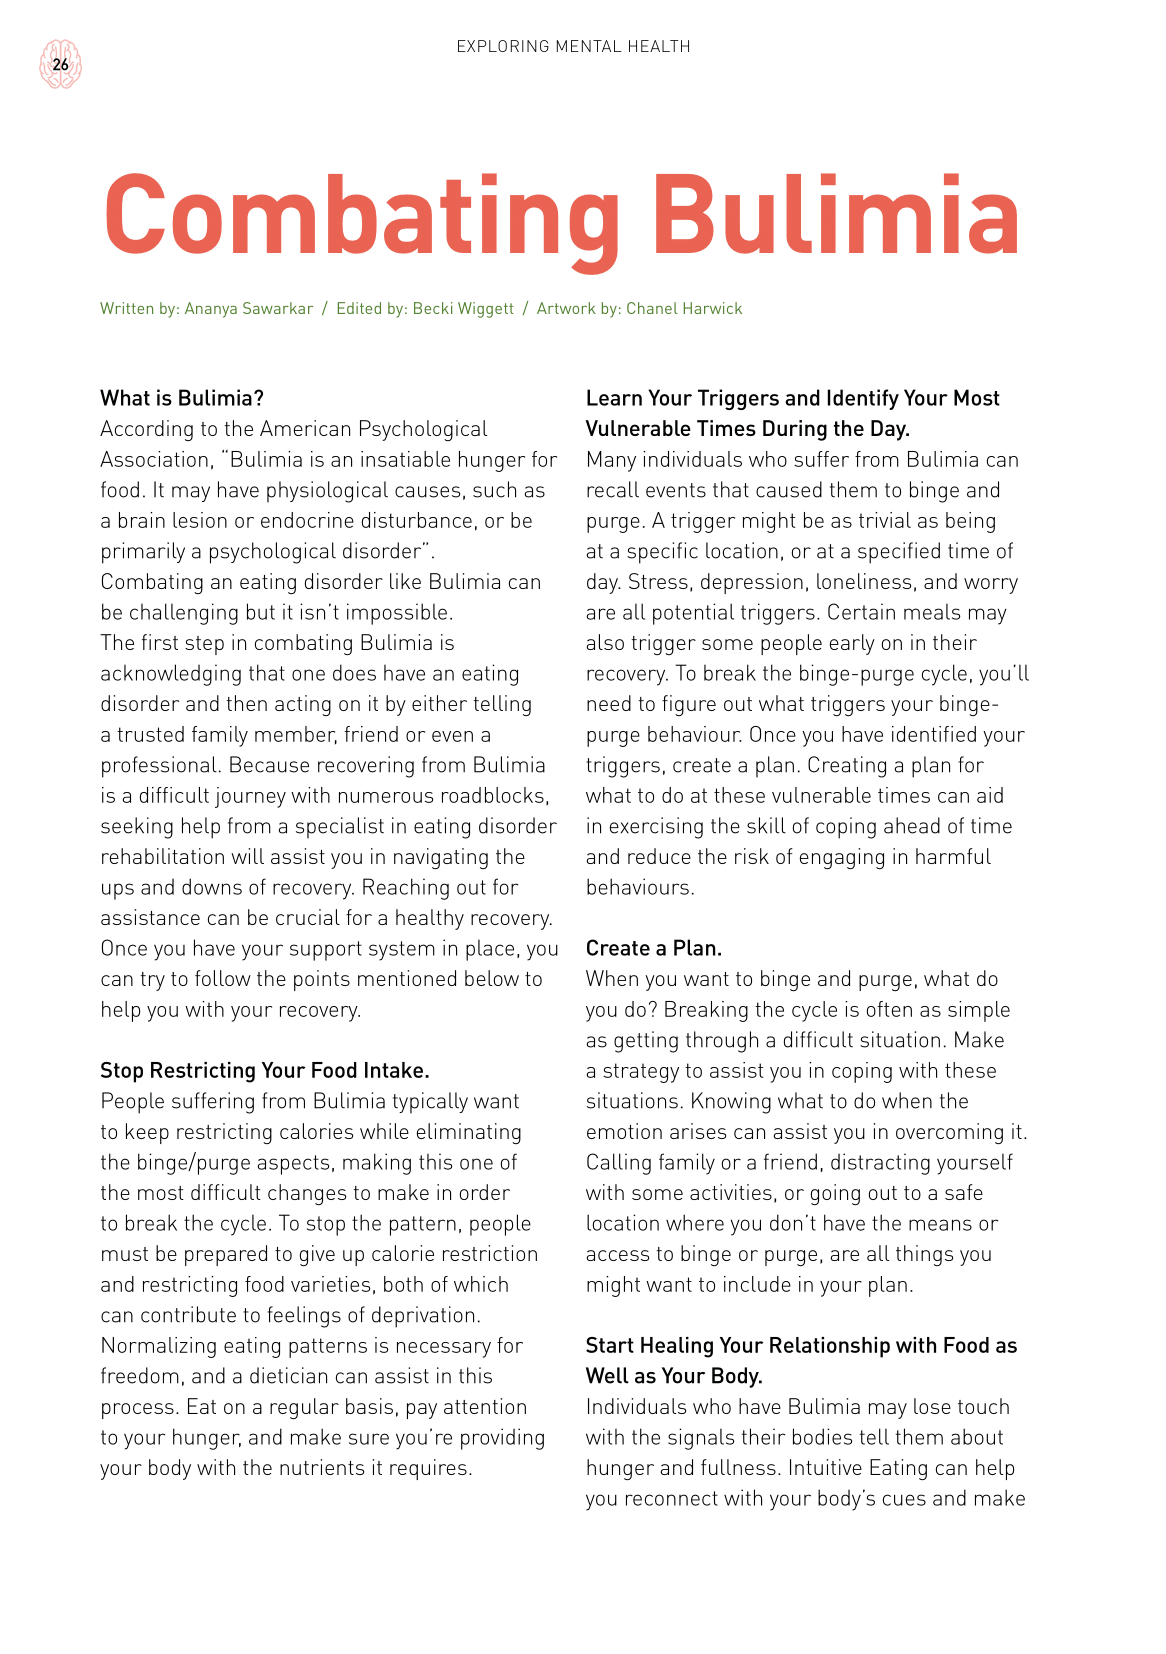 Psych2Go Magazine #22 - Bulimia disorder (Digital)